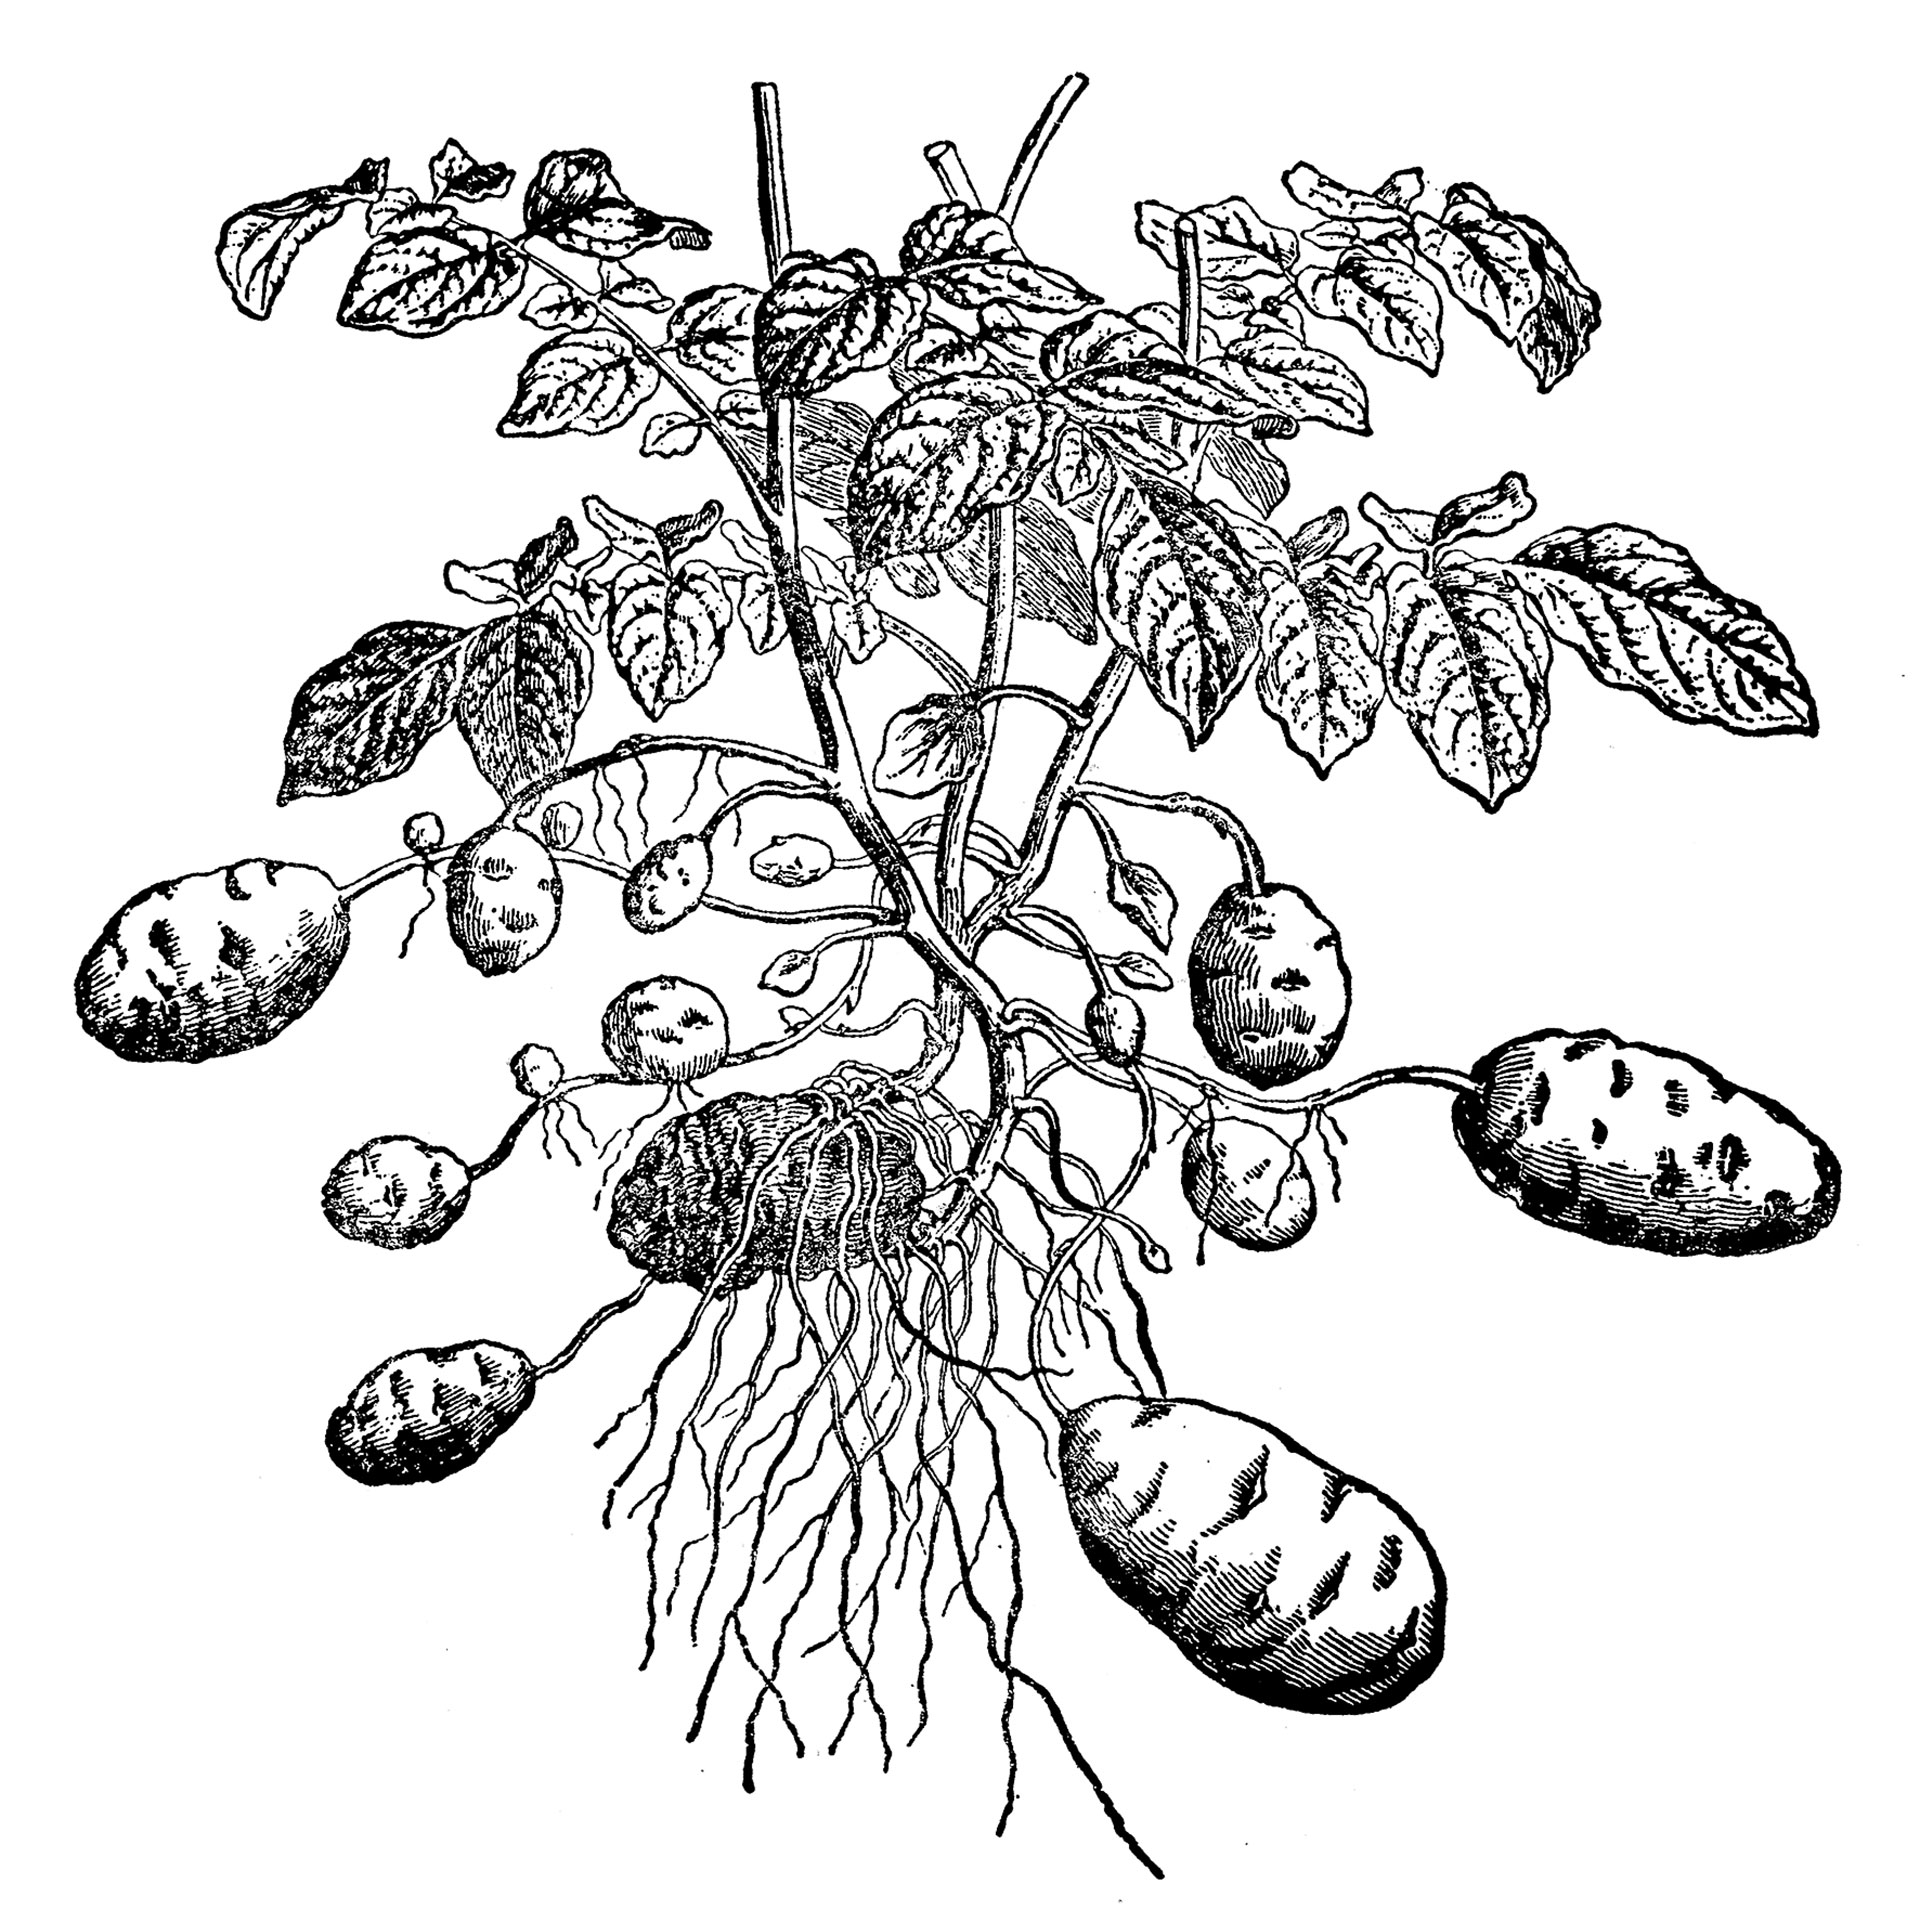 πώς να καλλιεργήσετε πατάτες στο μπαλκόνι σας